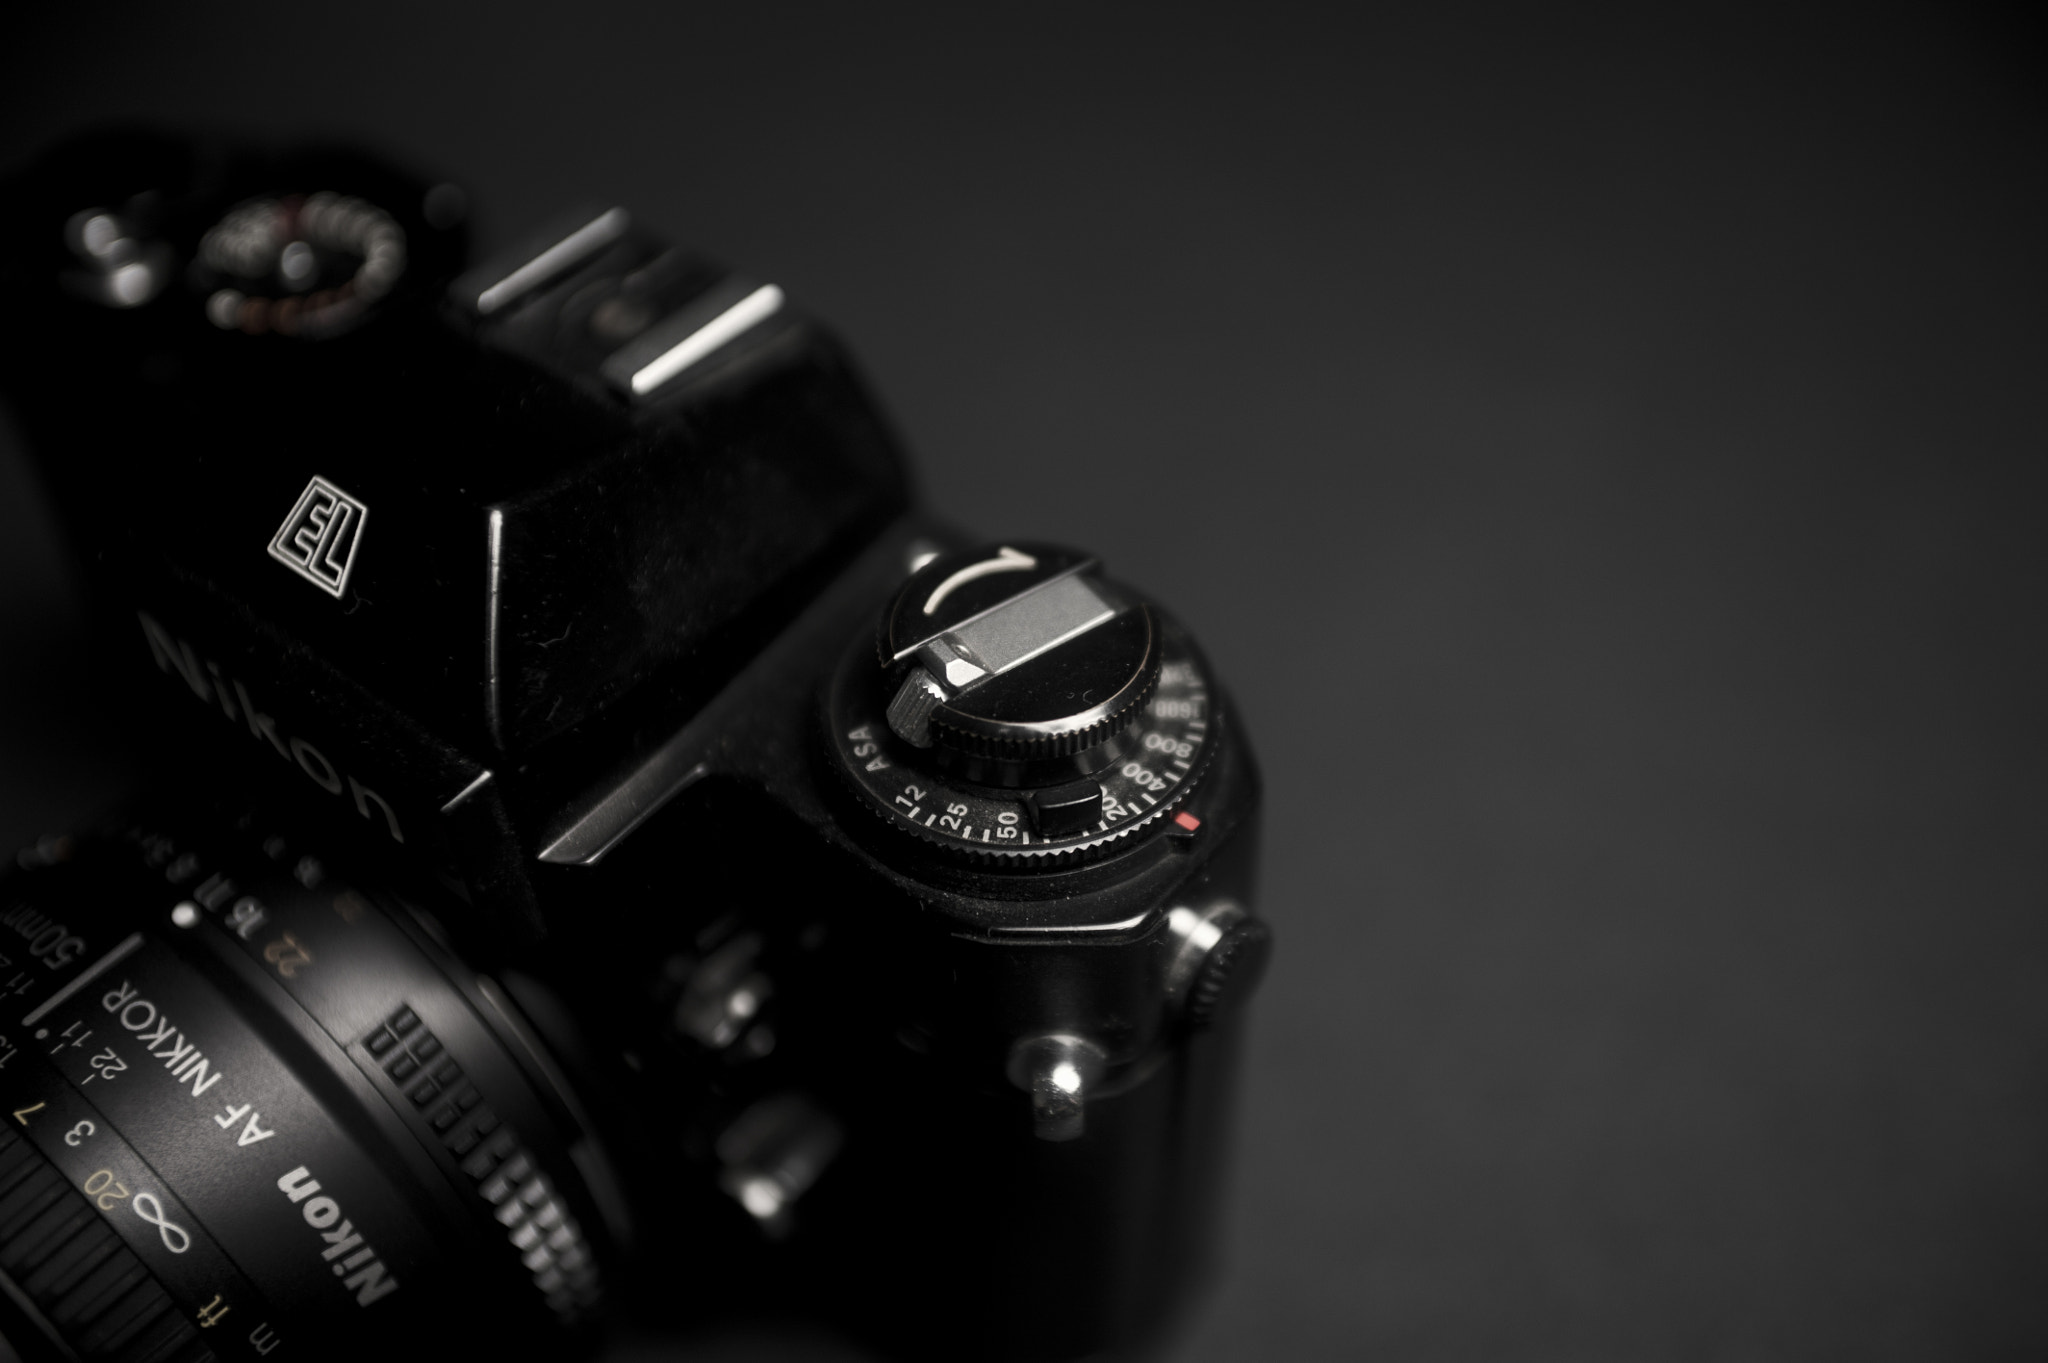 Nikon D700 + AF Zoom-Nikkor 35-70mm f/2.8D sample photo. El 1 photography